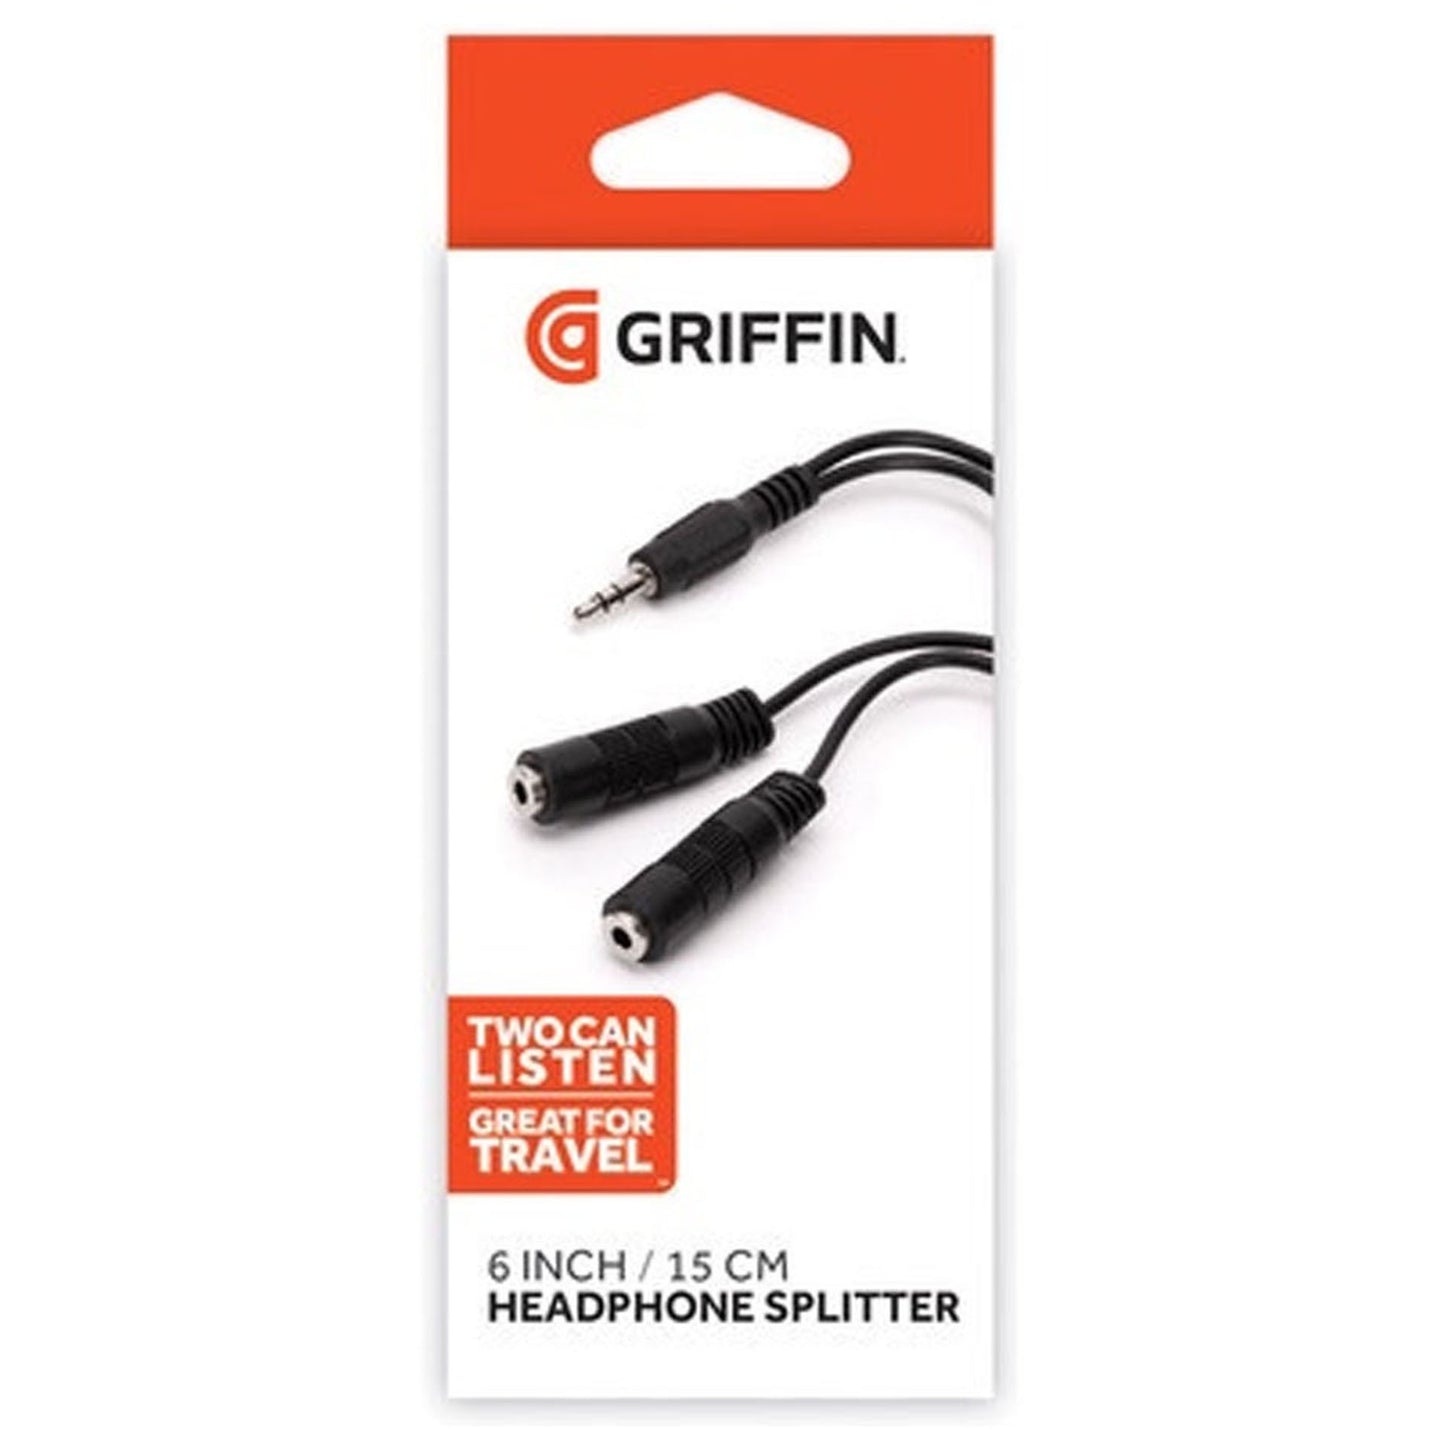 GRIFFIN 3.5MM HEADPHONE SPEAKER SPLITTER